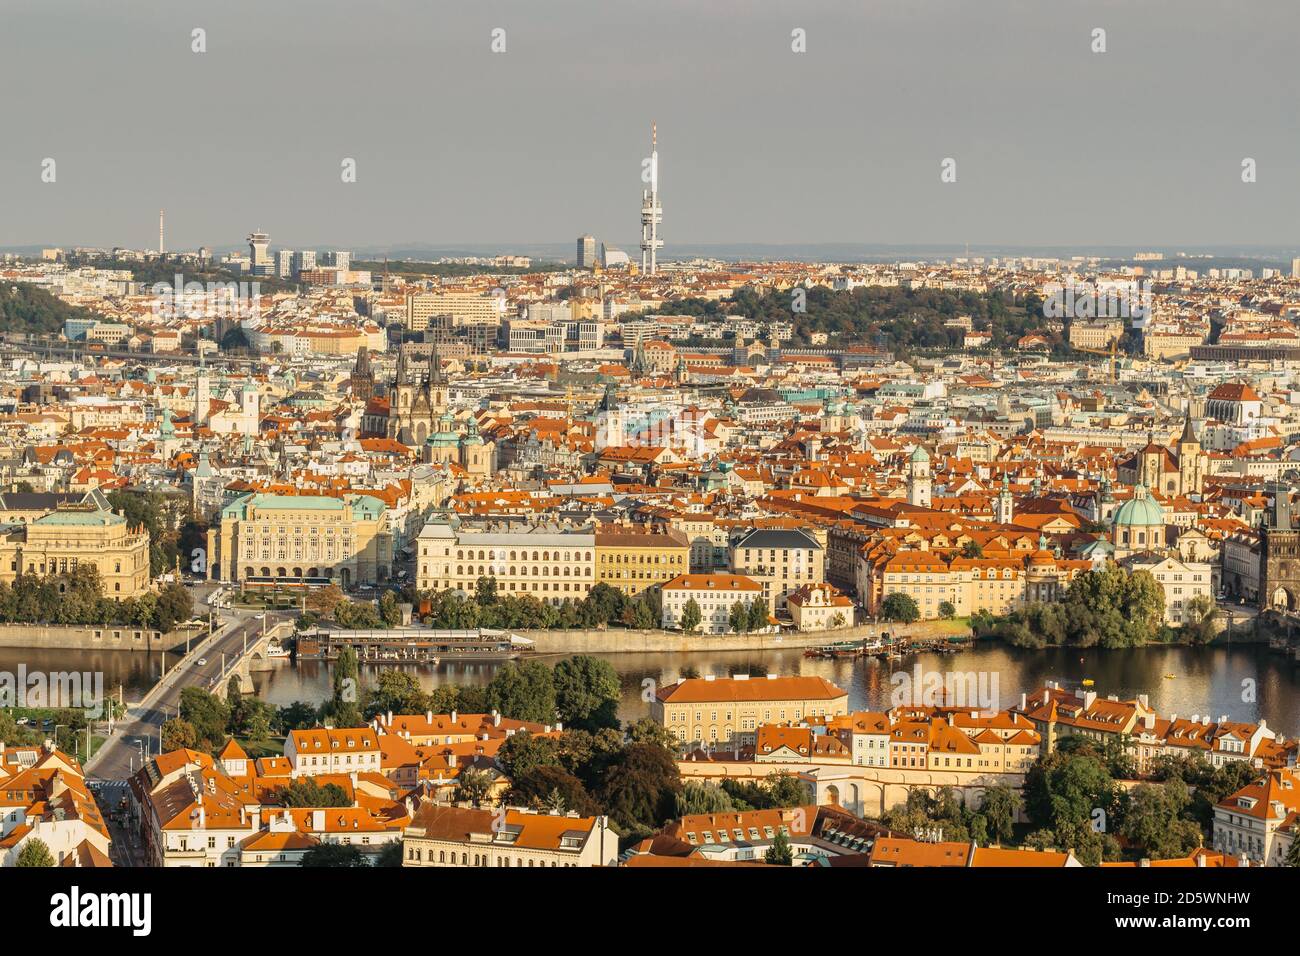 Luftpostkartenansicht von Prag, Tschechien. Prag Panorama.schöne sonnige Landschaft der Hauptstadt Tschechiens.Amazing europäischen Stadtbild.Rote Dächer, bridg Stockfoto